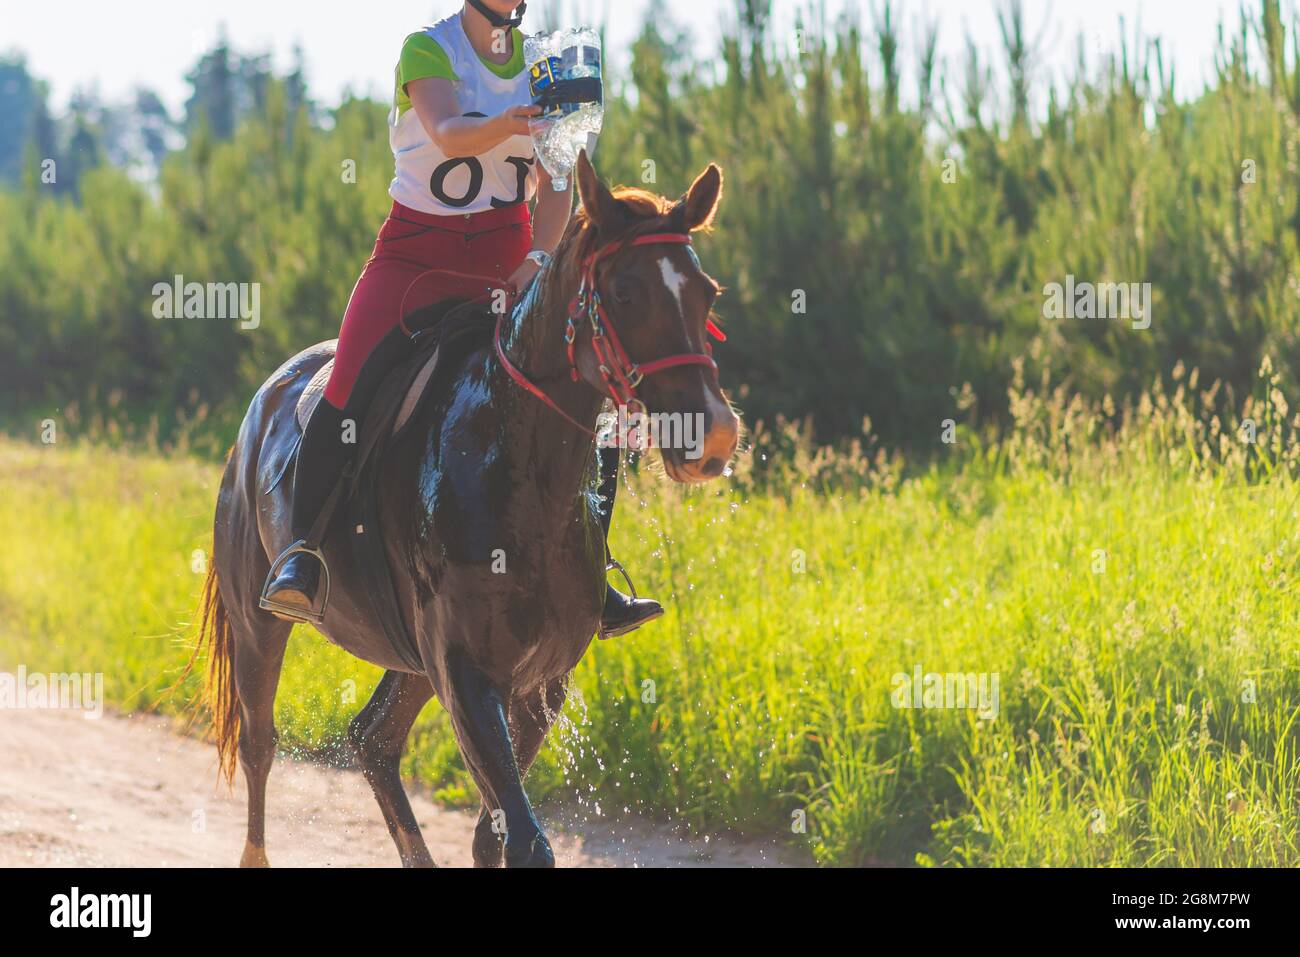 Konkurrent gießen Wasser auf das Pferd in Sommerfeld Wiese.Junge Reiter galoppiert durch den Sommer sonnigen Tag.Rivalität Konzept. Stockfoto